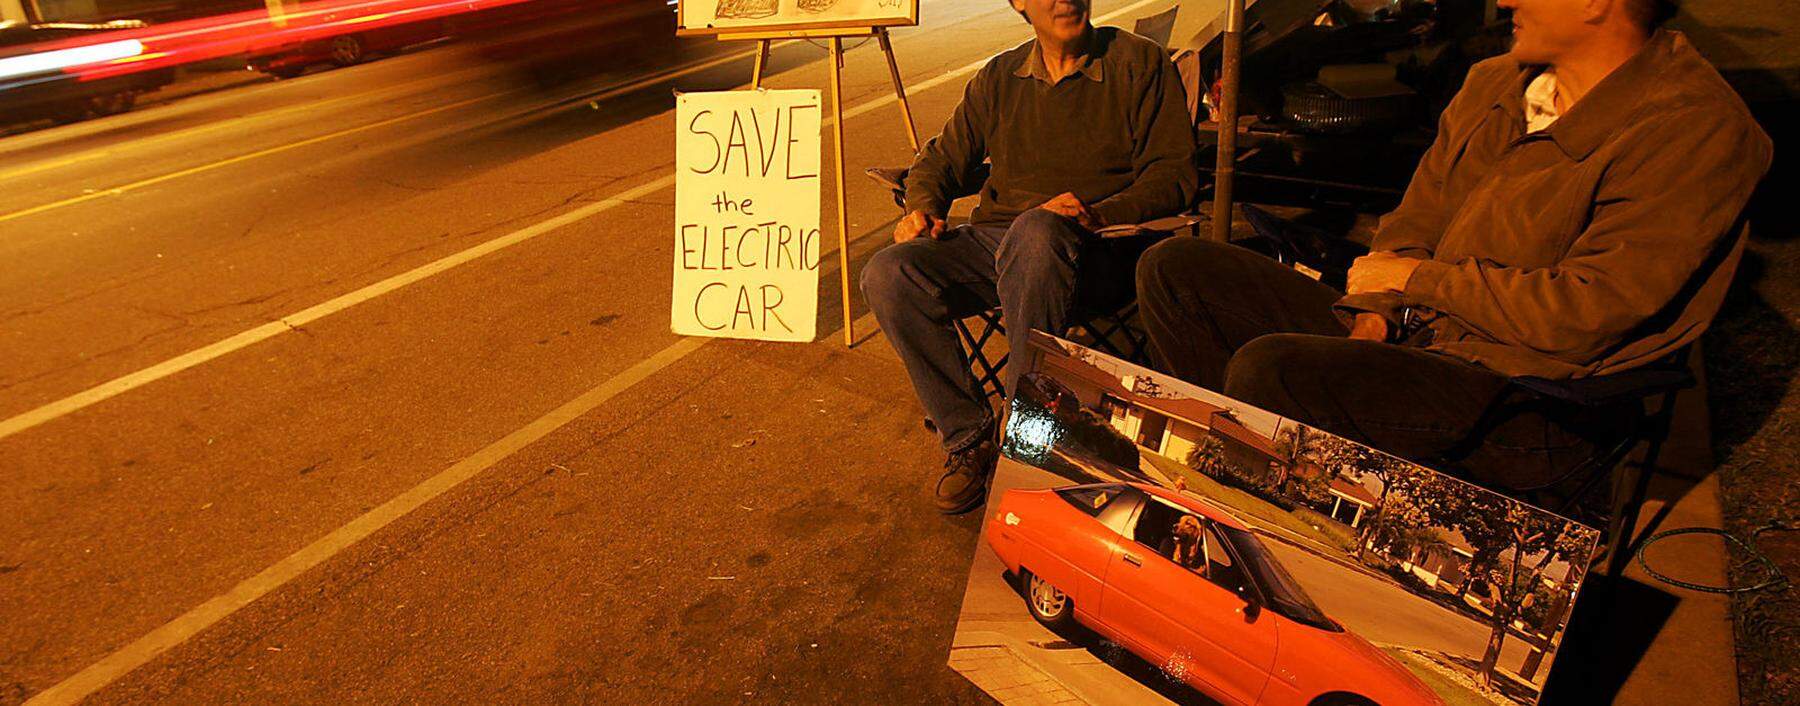 Ausdauernd: Zwei Aktivisten und frühere EV1-Nutzer protestieren nahe der Schrottpresse des Werksgeländes von GM.